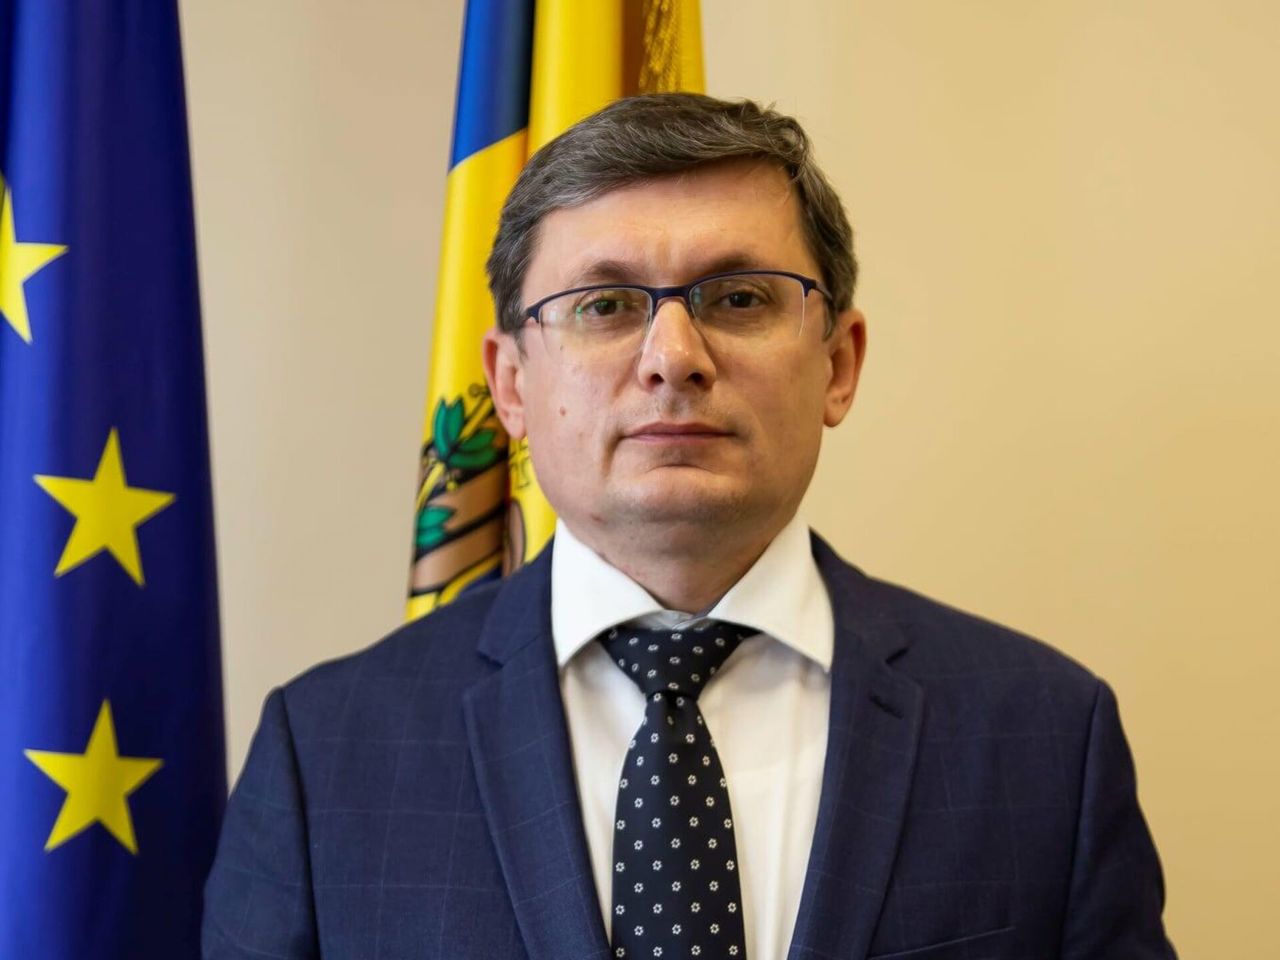 Парламент Республики Молдова готовит необходимые шаги для проведения референдума. Игорь Гросу: "Теперь у нас есть шанс на лучшее настоящее"